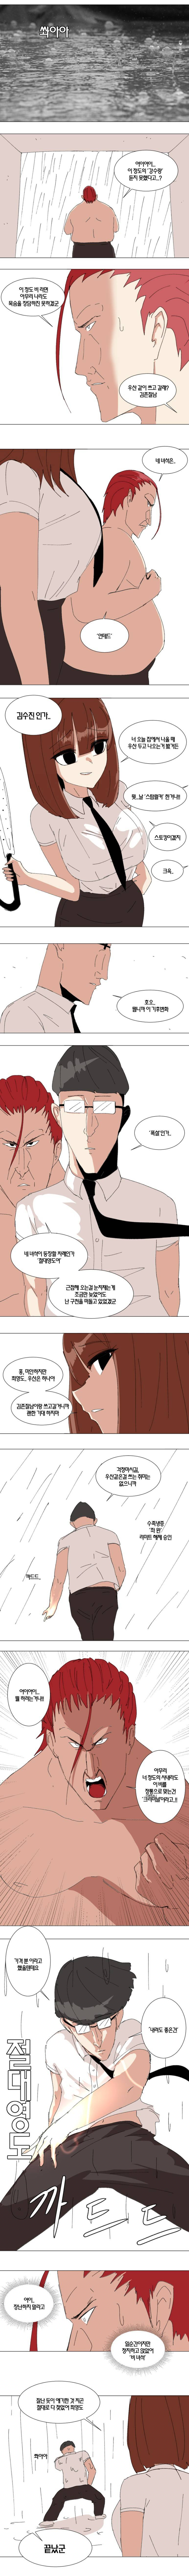 절대영도 최영도 - 비오는 날(컬러) | 인스티즈